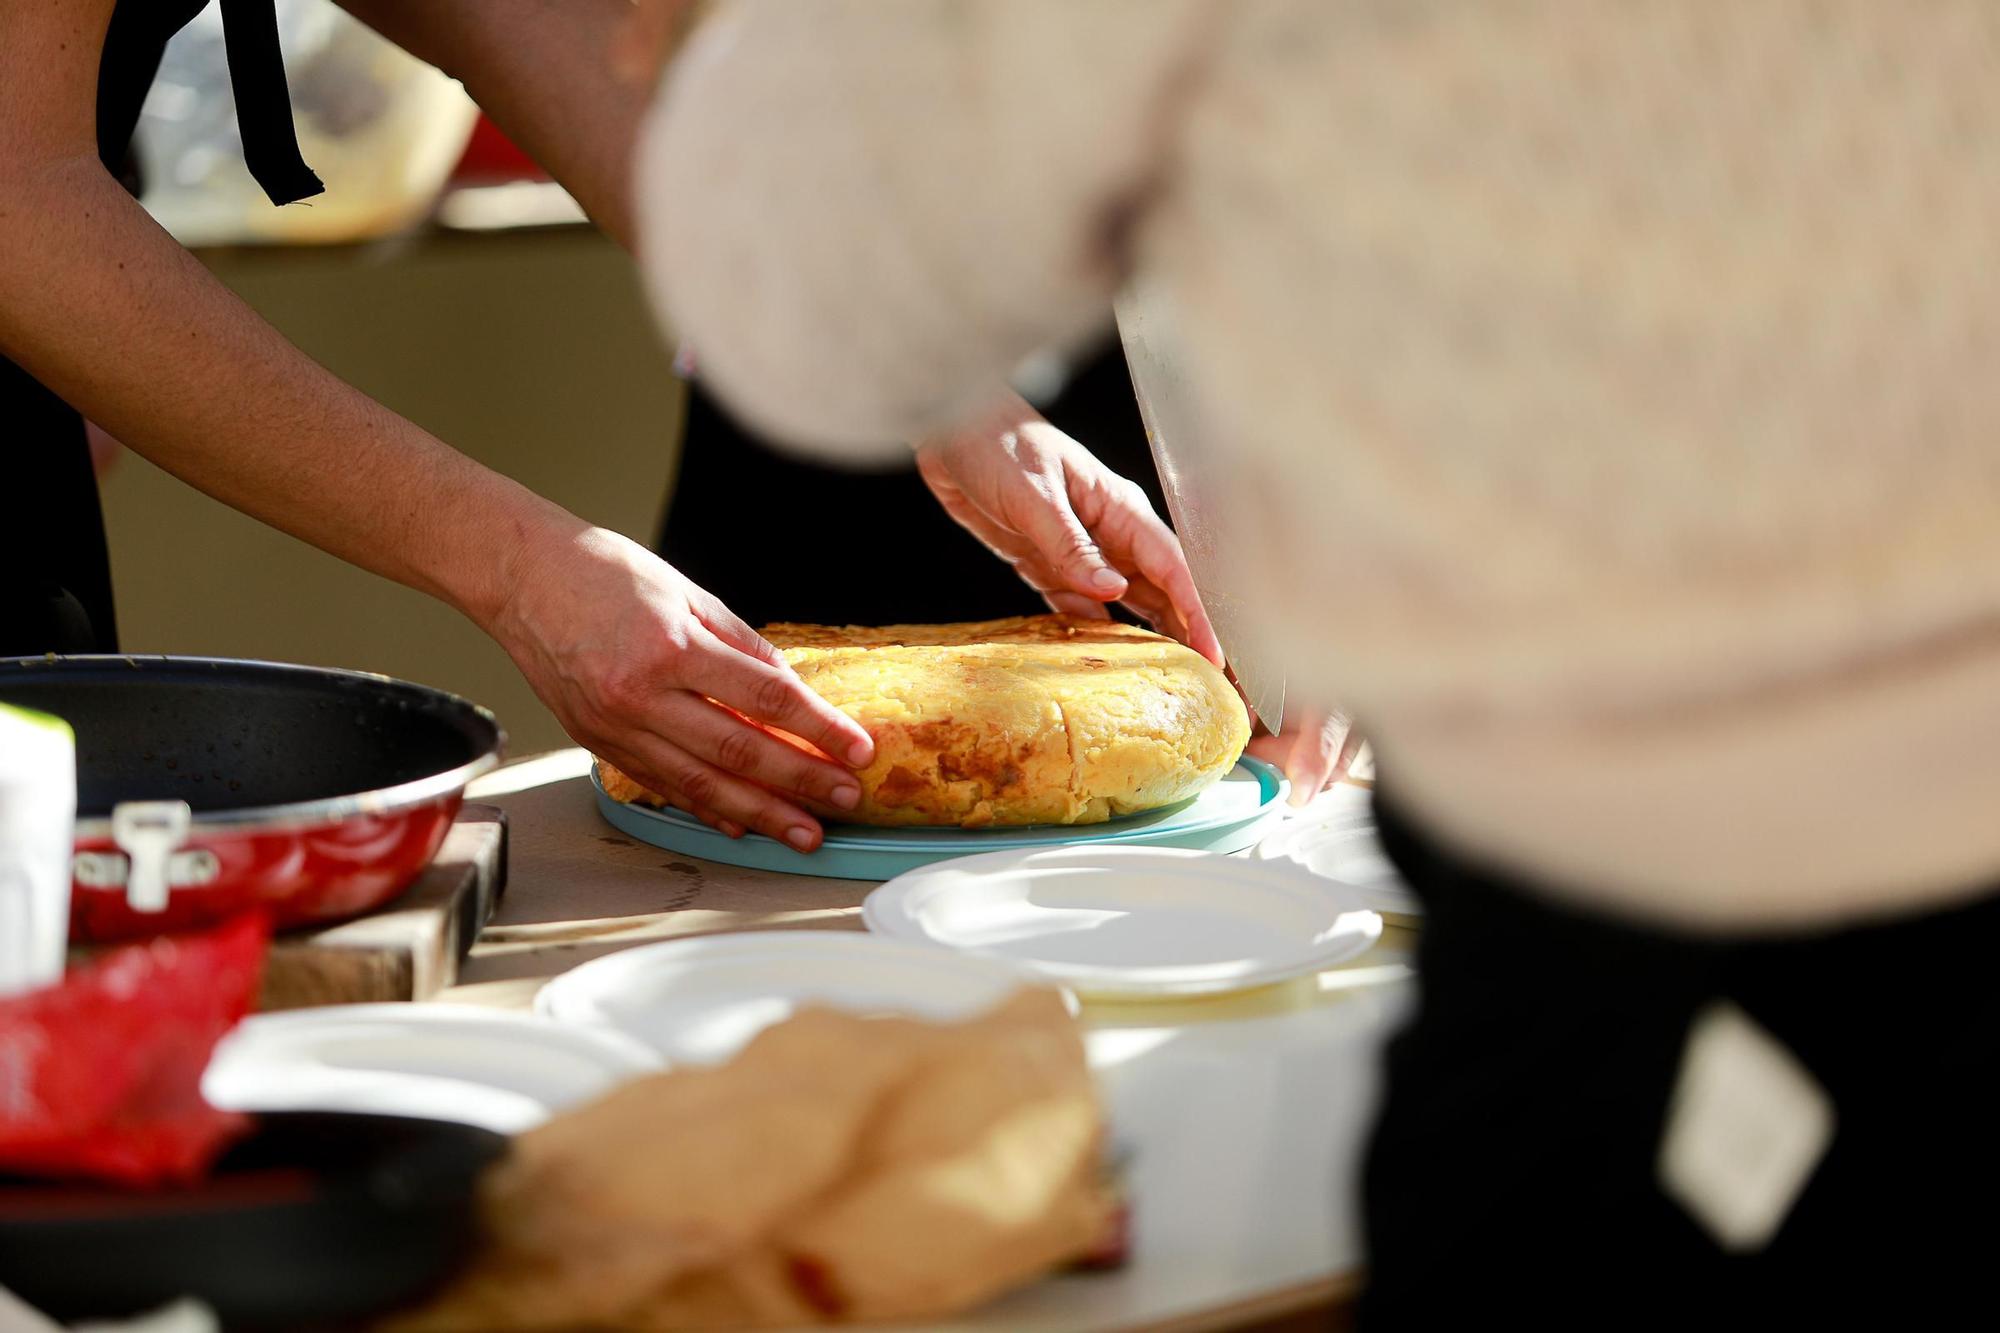 Mira aquí todas las fotos del concurso de la tortilla en Ibiza